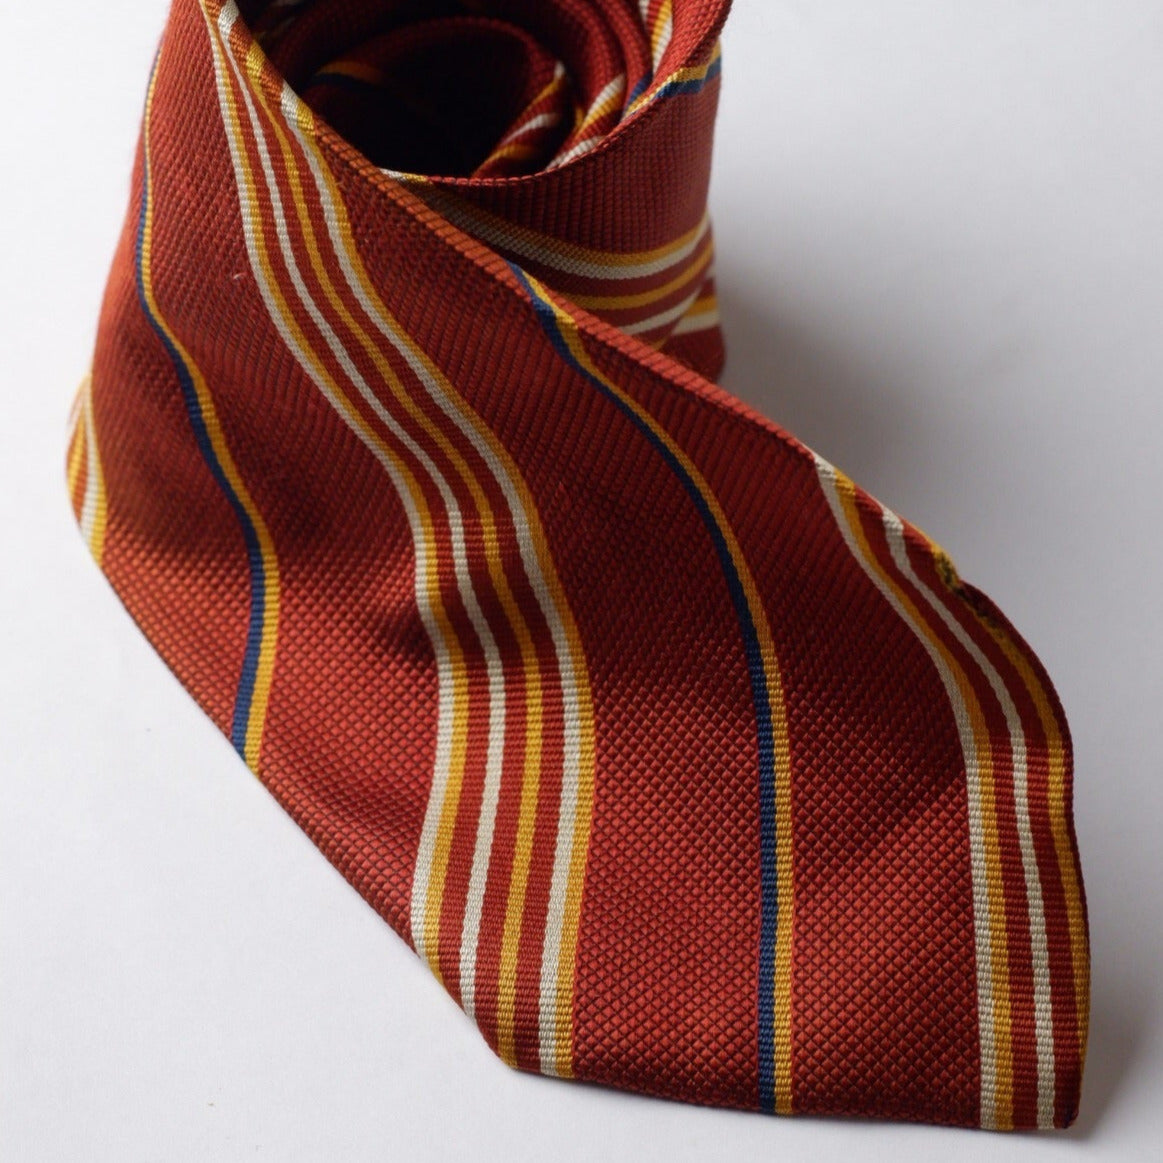 Lanolini Orange with Stripes Necktie